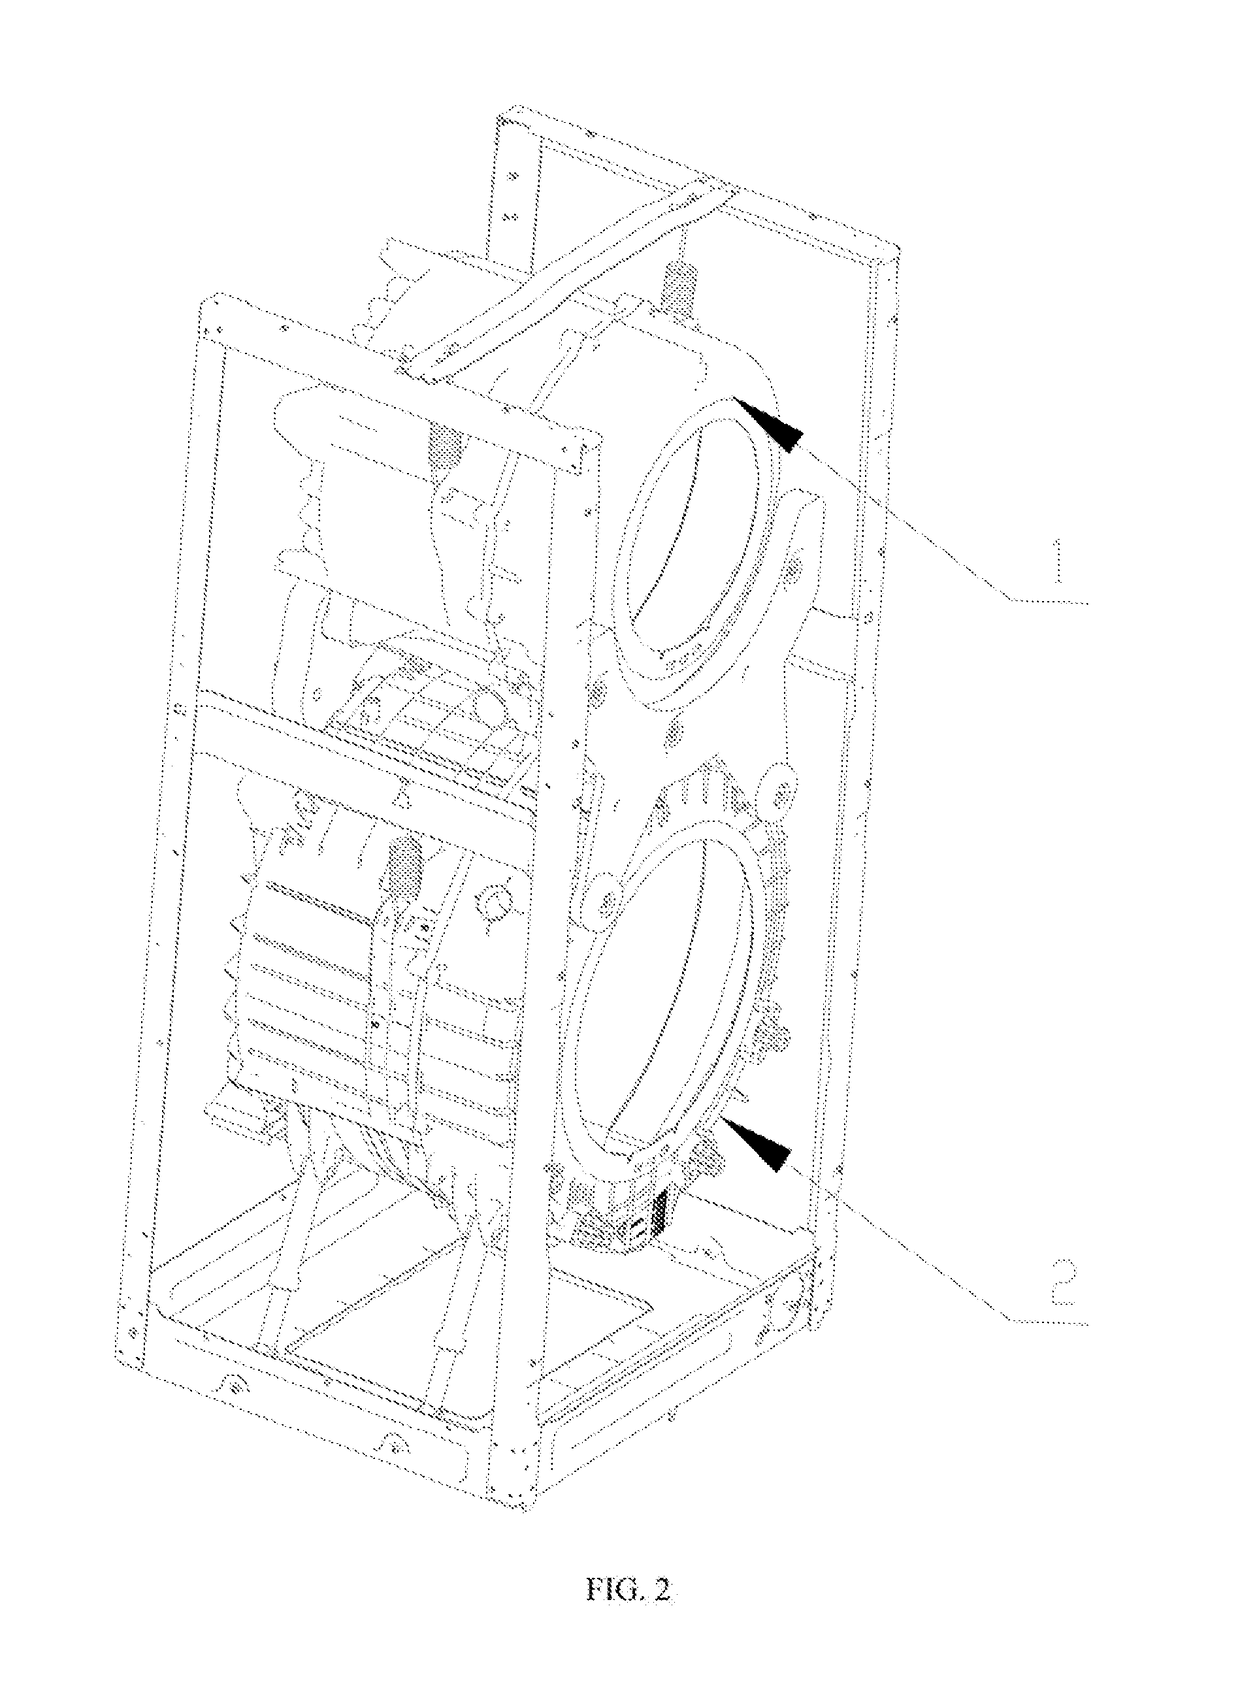 Control method of dual-drum washing machine